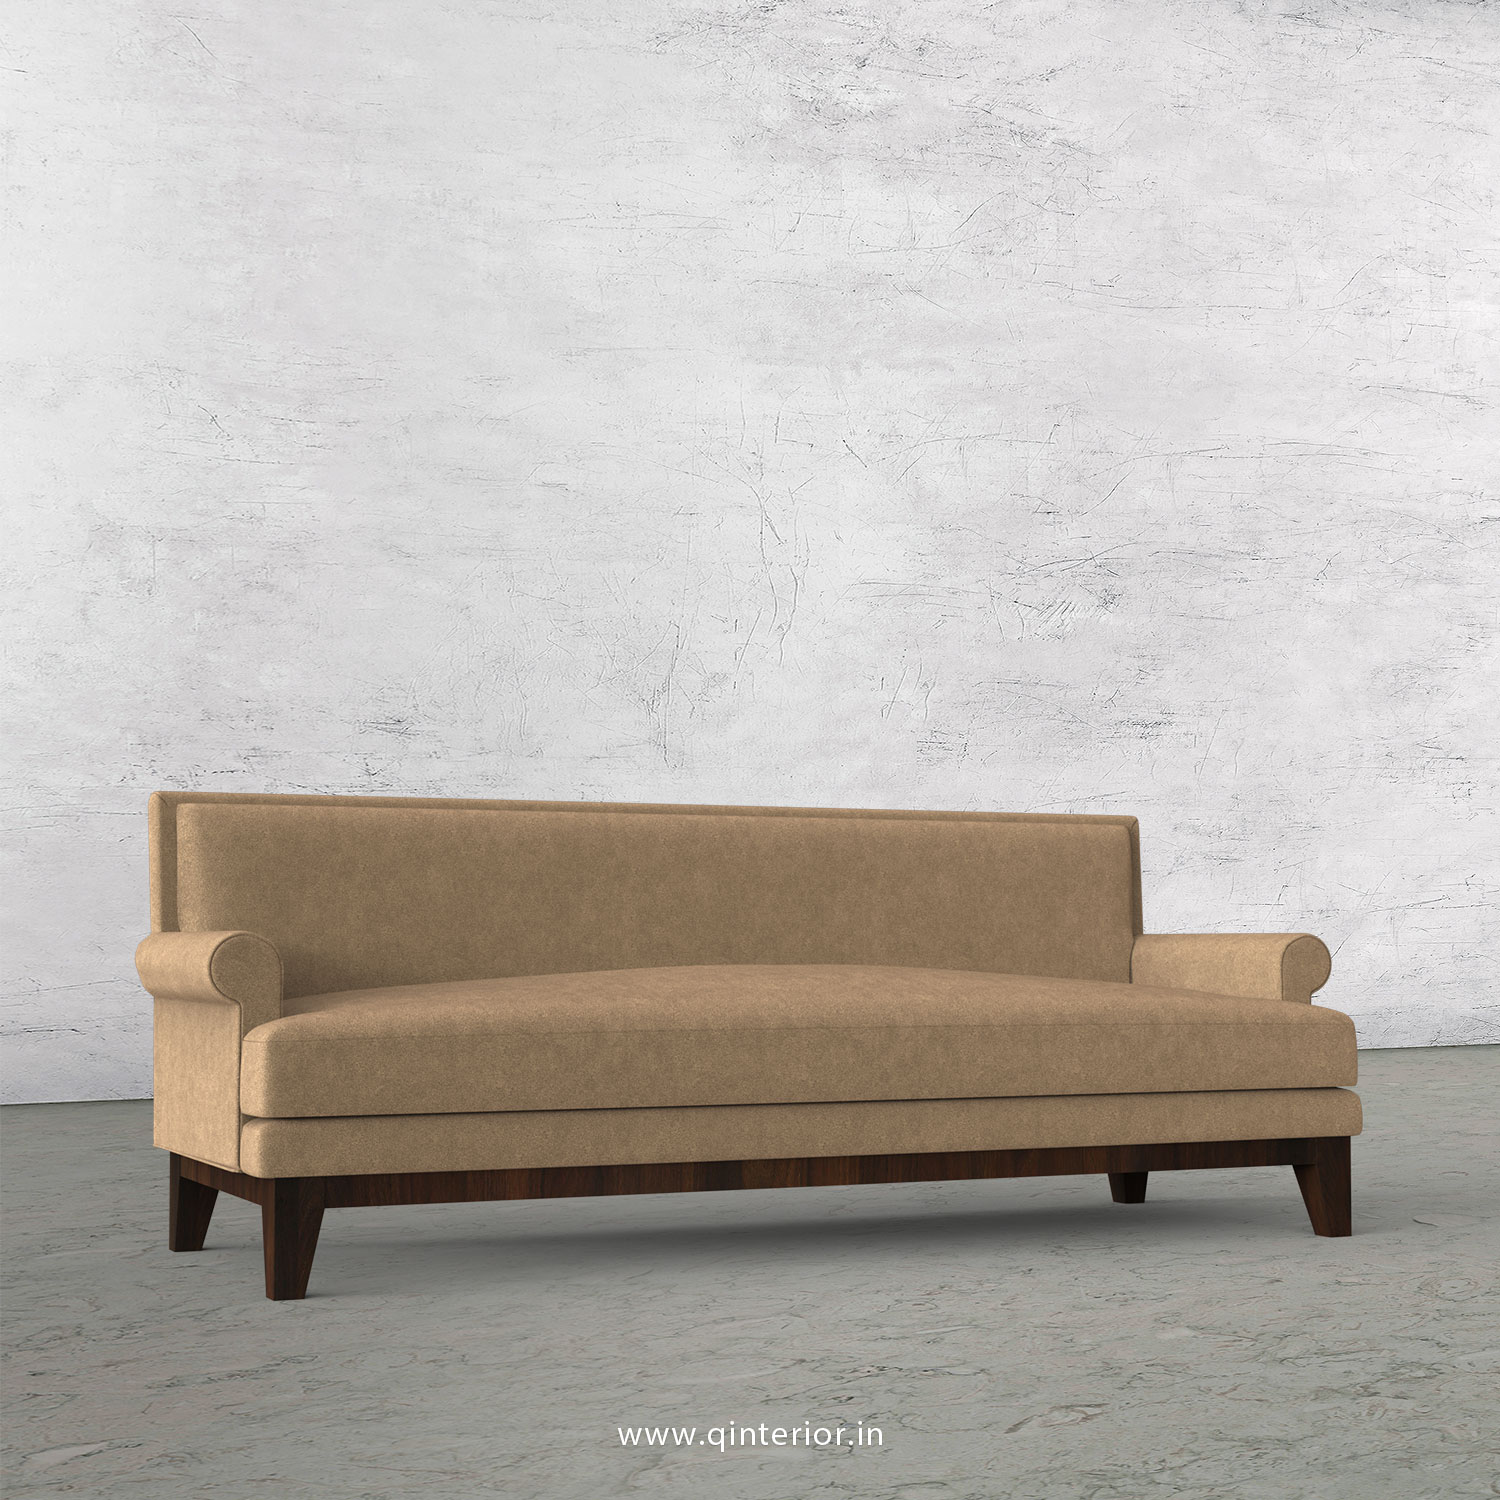 Aviana 3 Seater Sofa in Velvet Fabric - SFA001 VL09